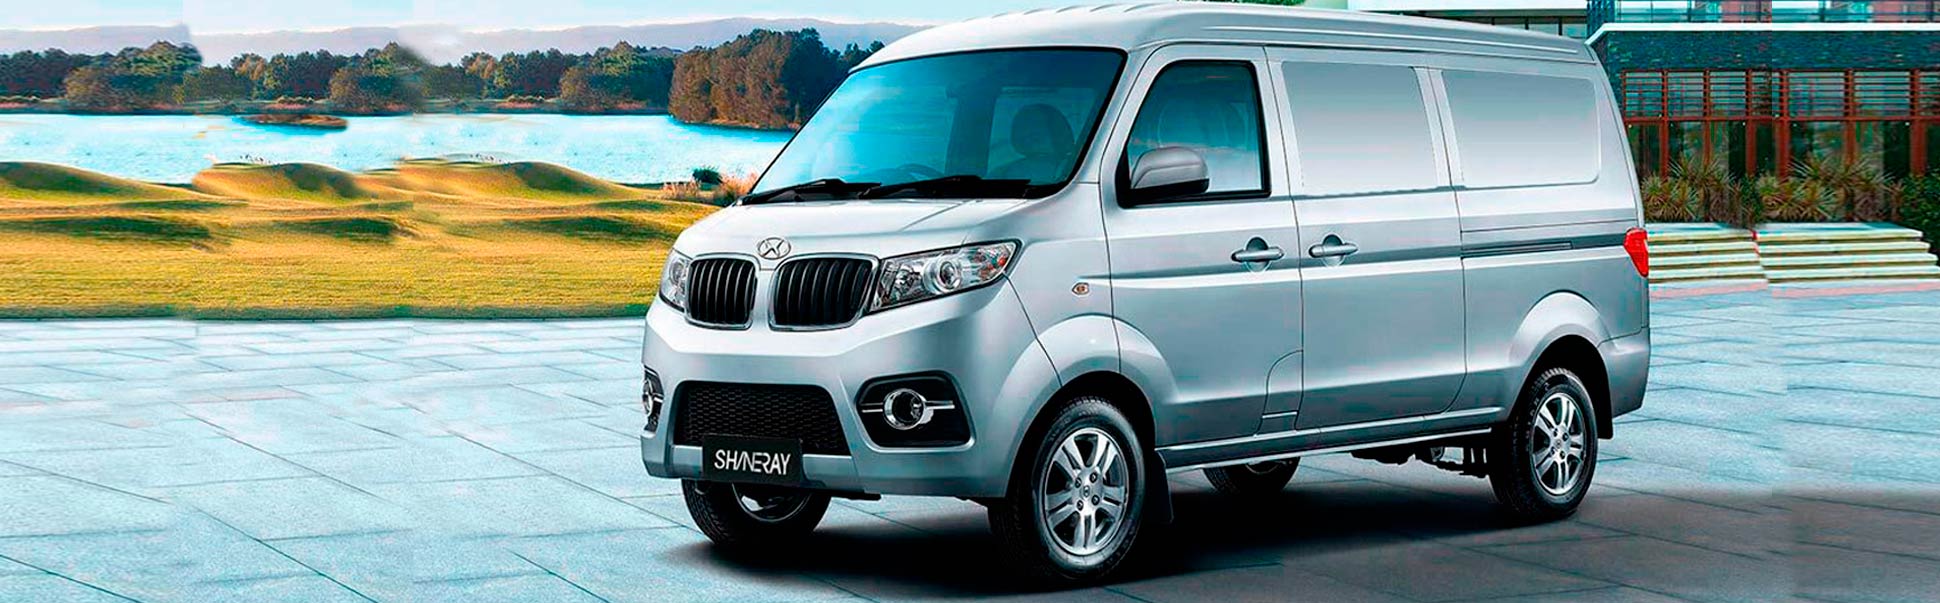 Shineray Van X30 Para Carga Ambacar Ecuador